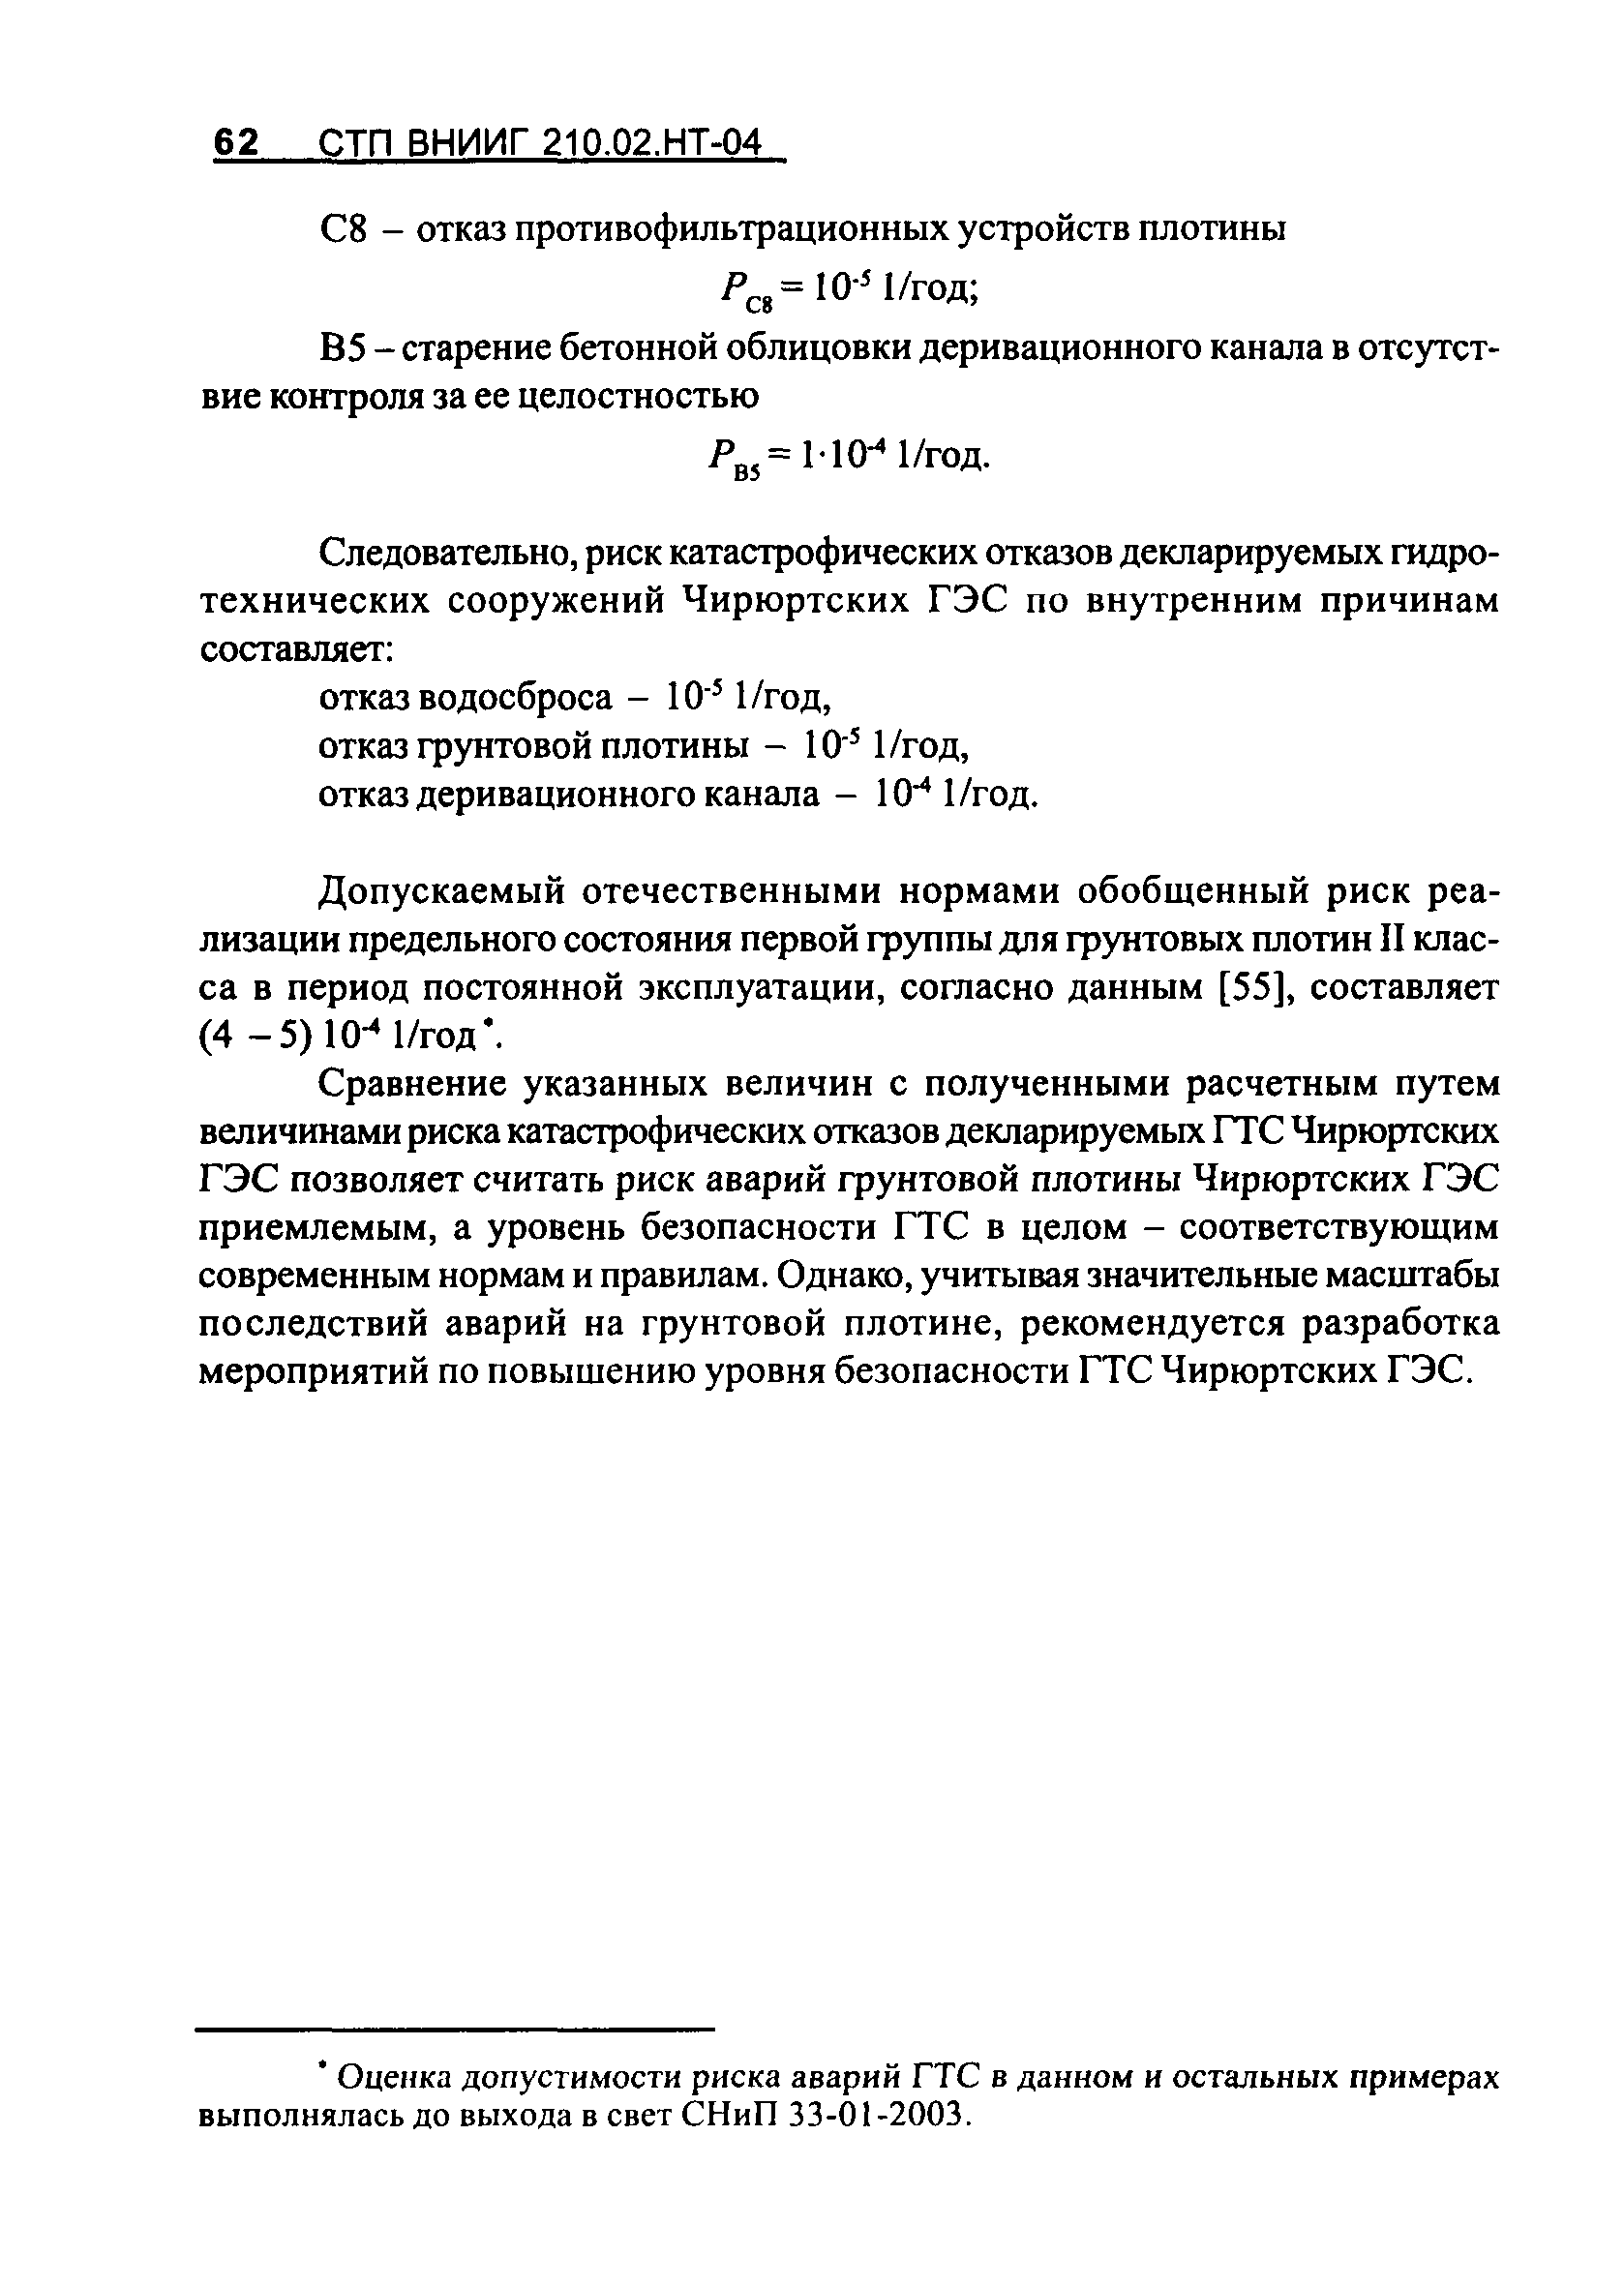 СТП ВНИИГ 210.02.НТ-04